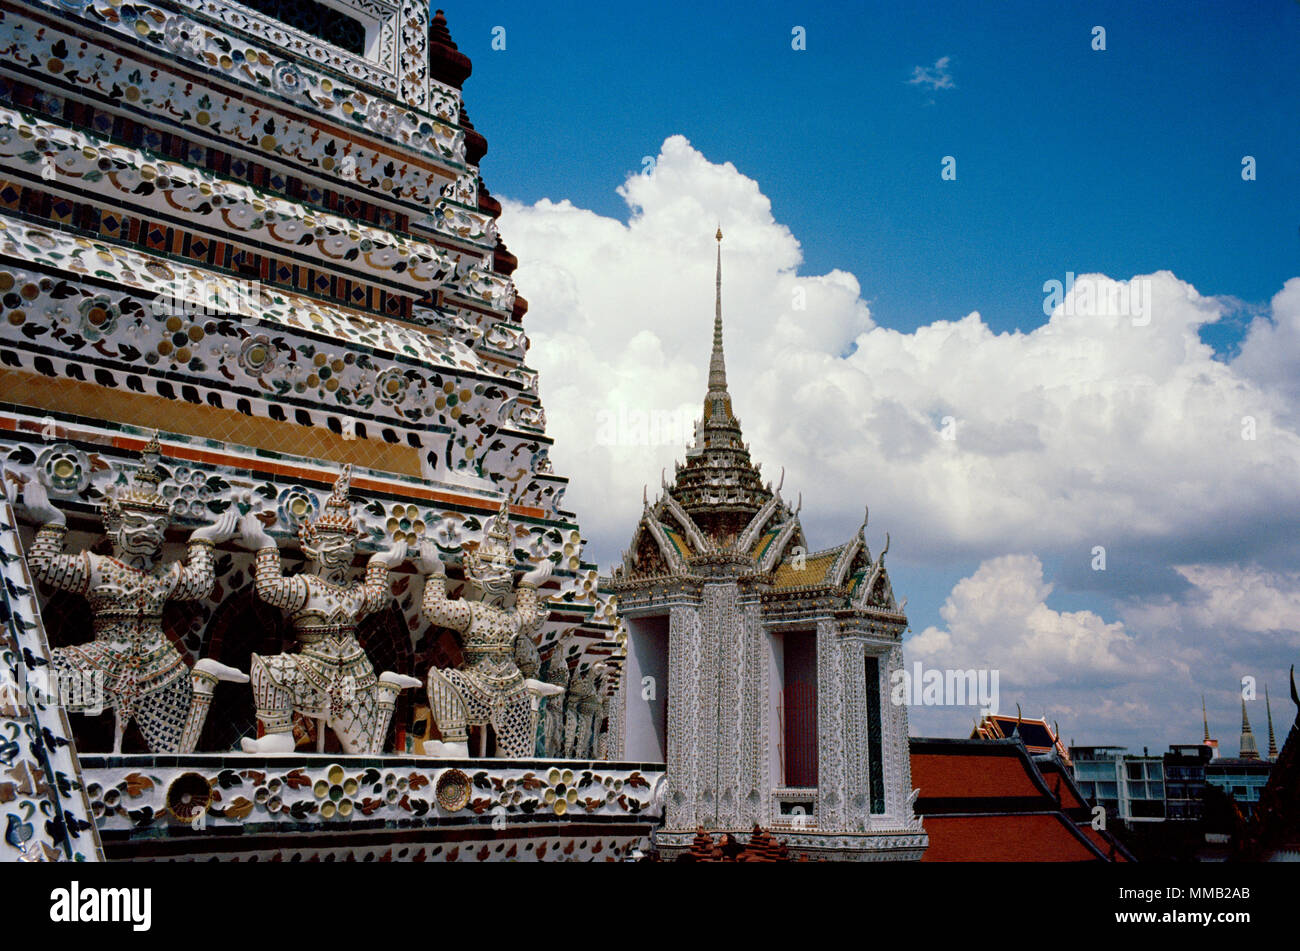 Temple bouddhiste de l'aube - Wat Arun Temple à Bangkok Yai Thonburi à Bangkok en Thaïlande en Asie du Sud-Est Extrême-Orient. L'art bouddhique Couleur Couleur billet Banque D'Images